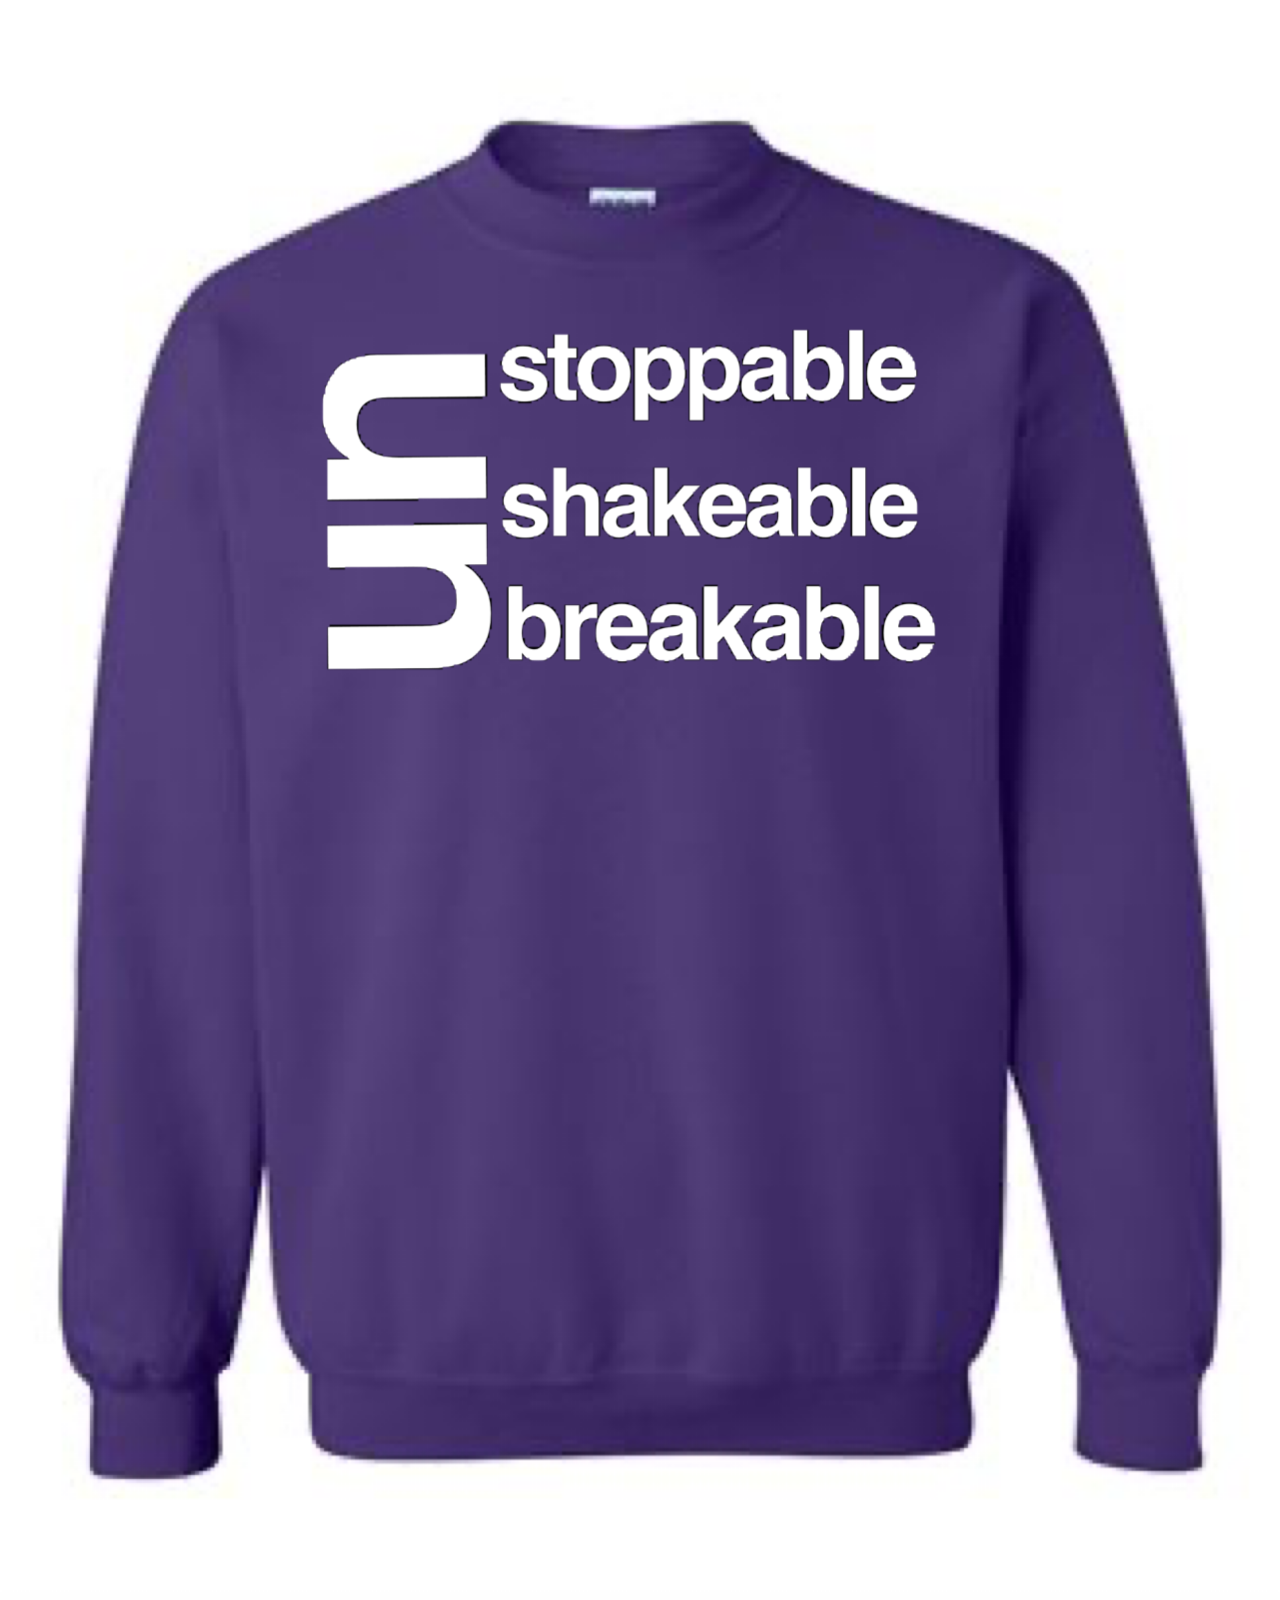 Unstoppable Unshakeable Unbreakable Crewneck Sweatshirt